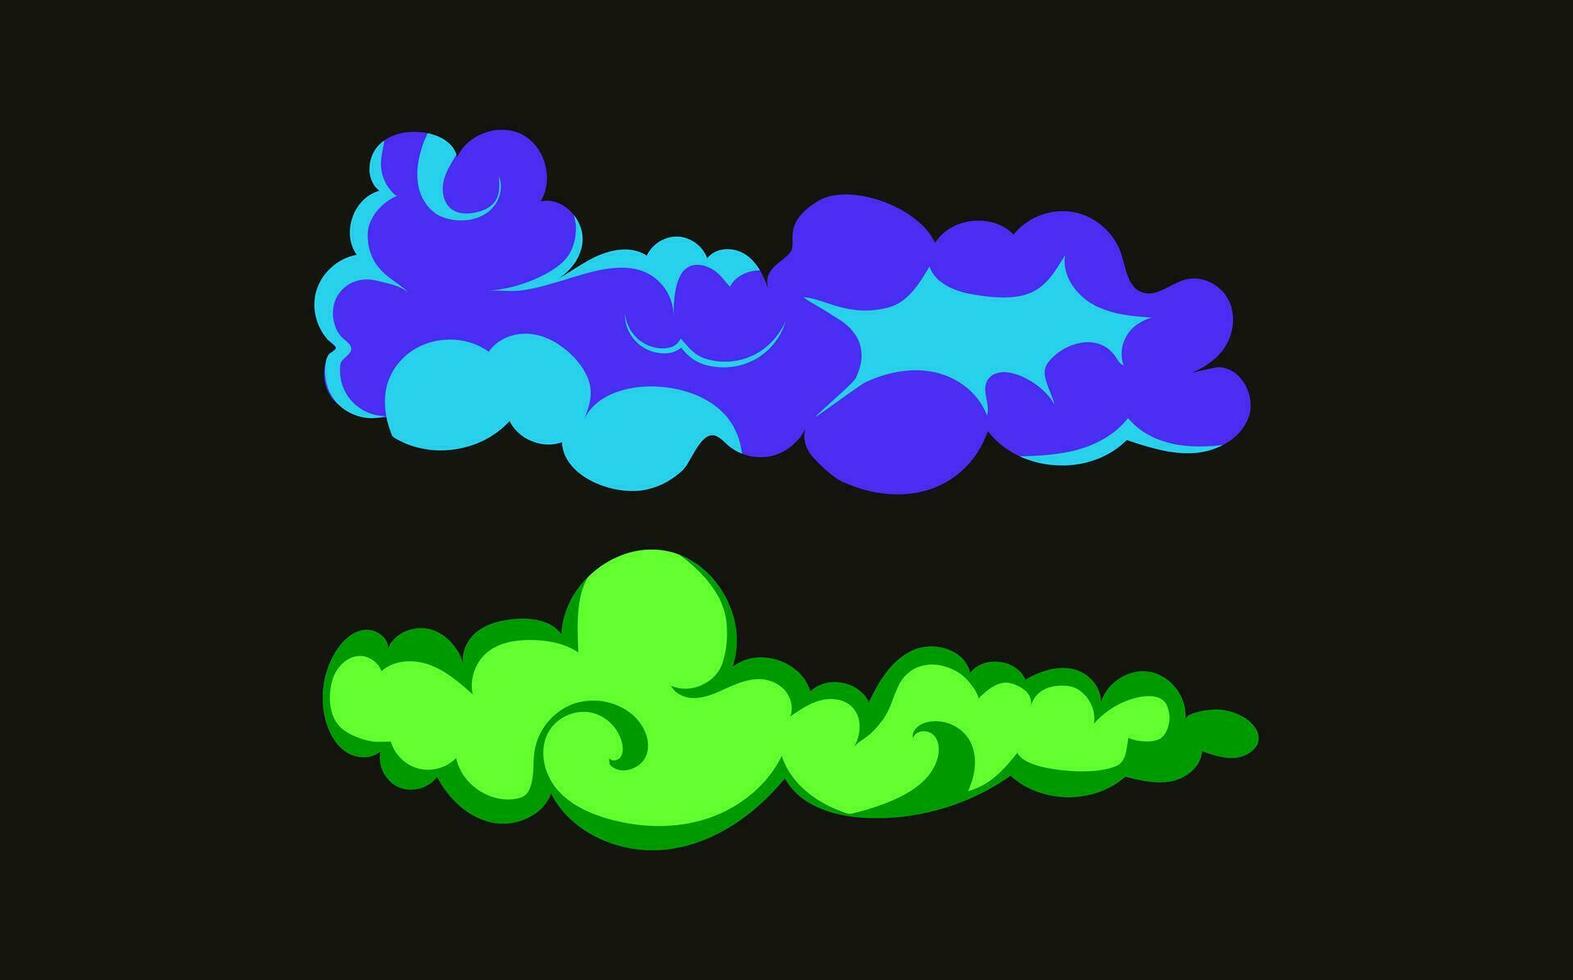 rök explosion animering av ett explosion med komisk flygande moln. uppsättning av isolerat vektor illustrationer till skapa ett explosion effekt. de effekt av rök rörelse, gnistra och dynamisk bom.